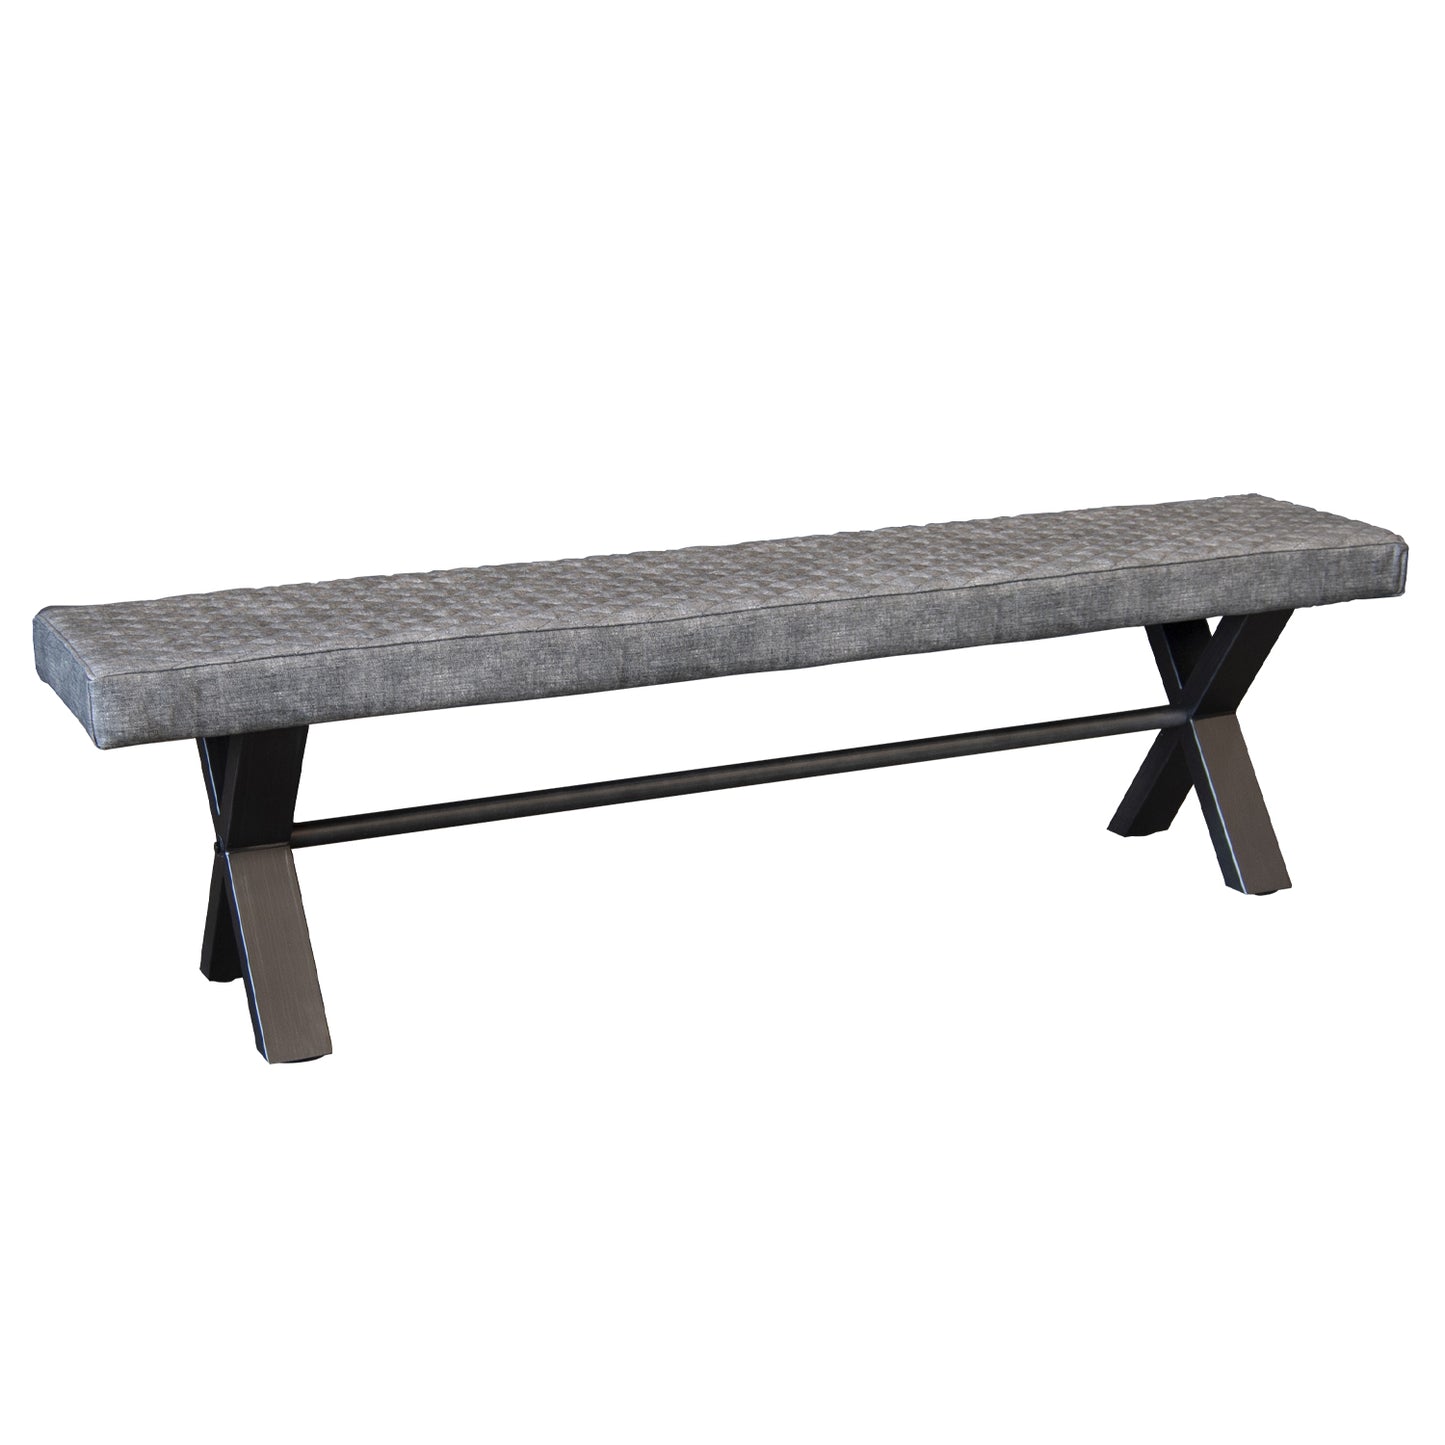 Elsworthy Bench - Large Upholstered